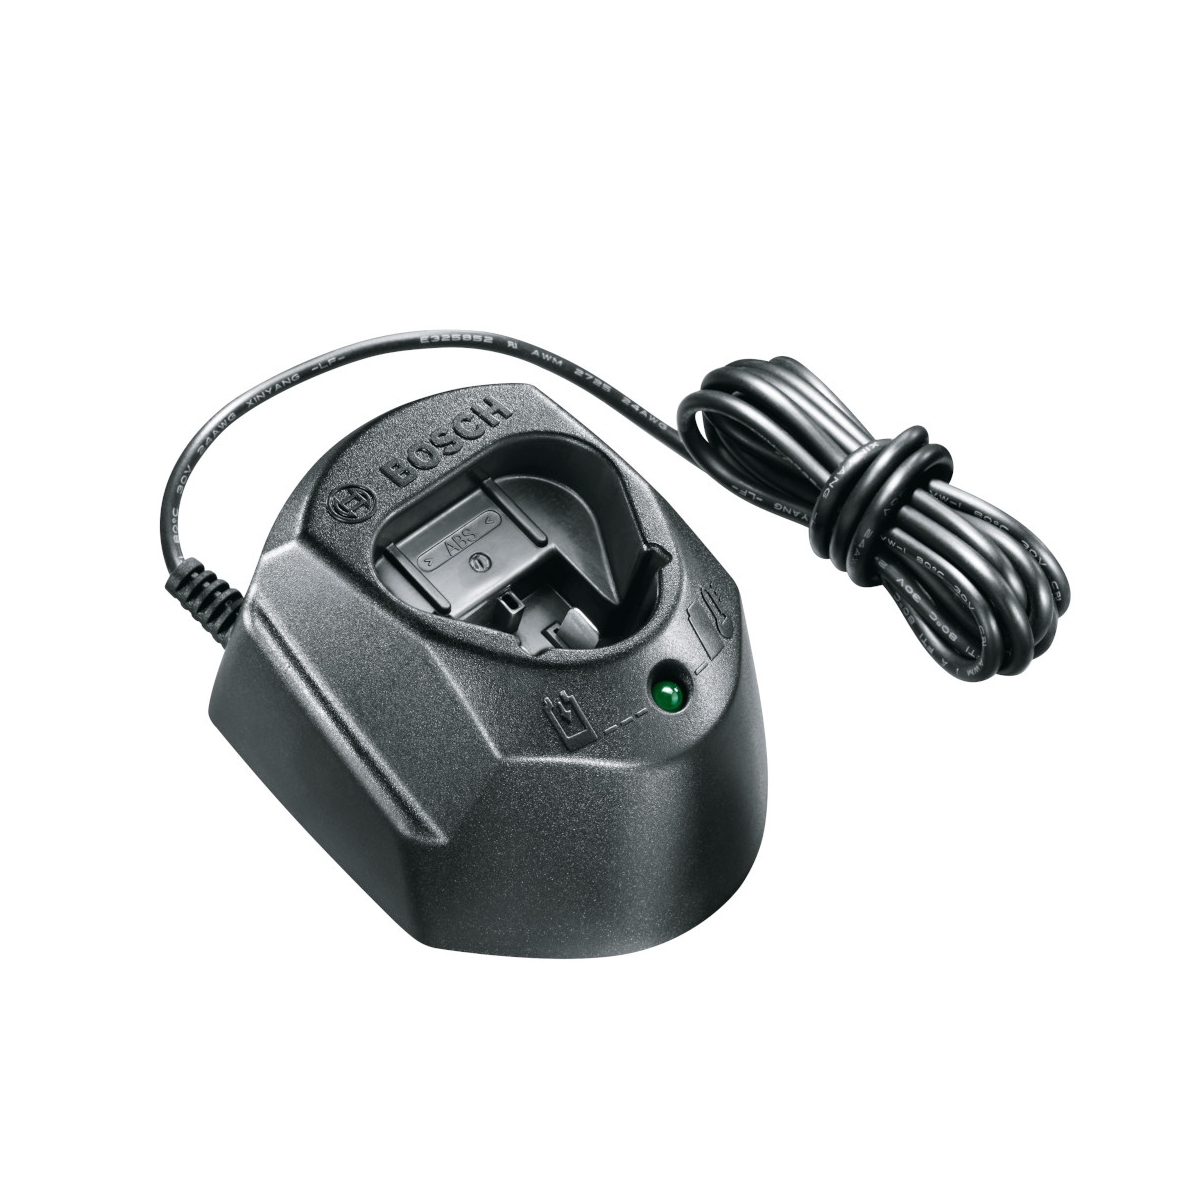 Bosch Professional GAL 12V-40 1600A019R3 Chargeur de batterie pour